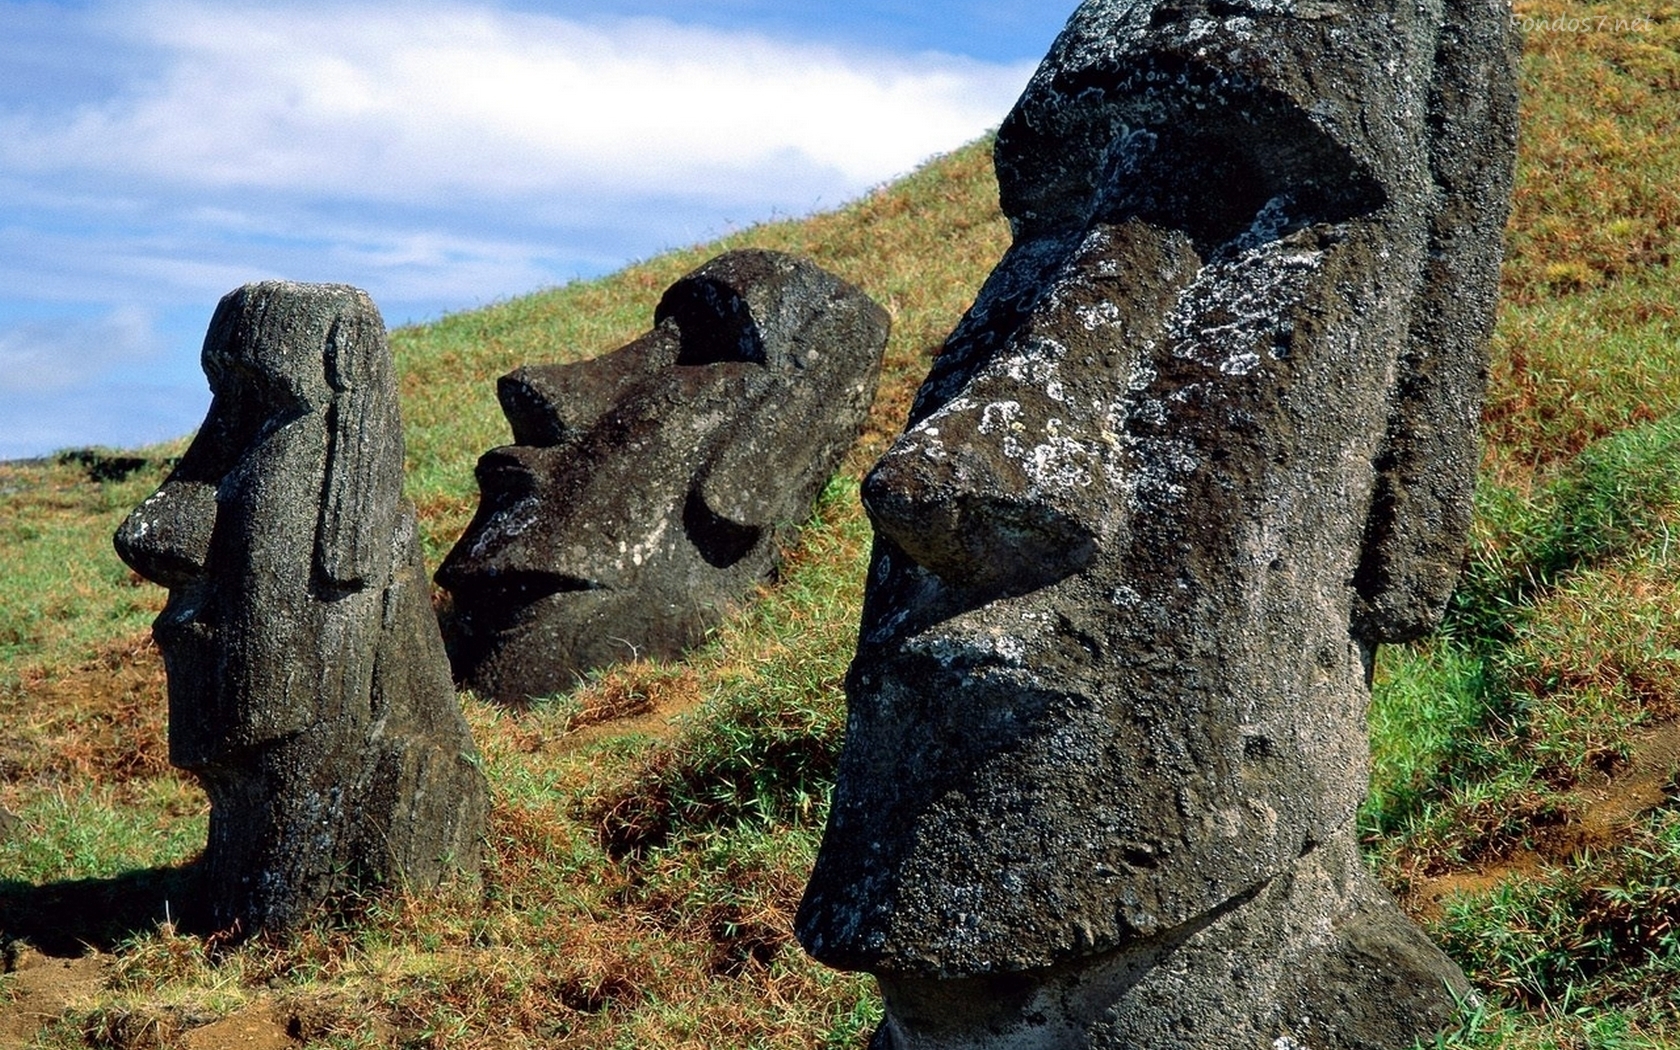 Descargar Fondos De Pantalla Moai Statues HD Widescreen Gratis